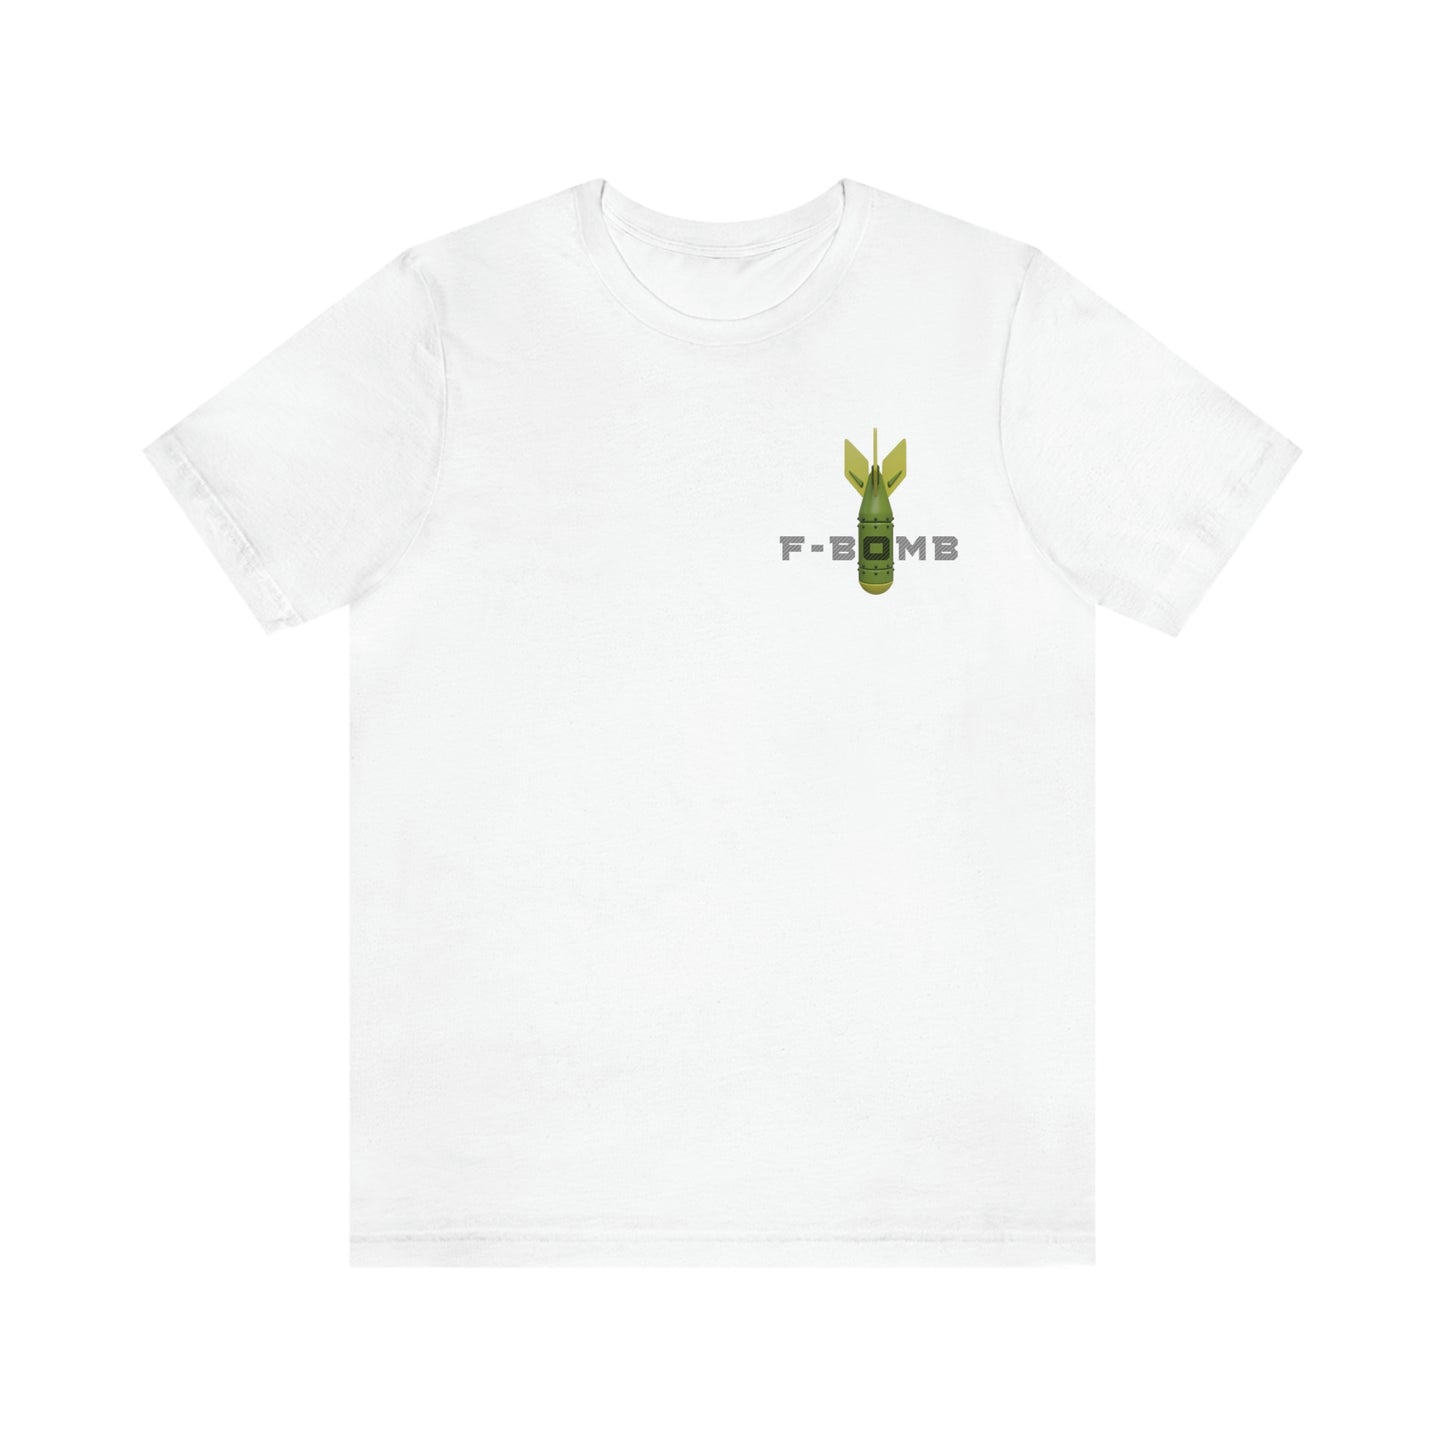 F-Bomb T-Shirt | EDGY T-Shirt Company | Funny Edgy Unisex Jersey Short Sleeve Tee